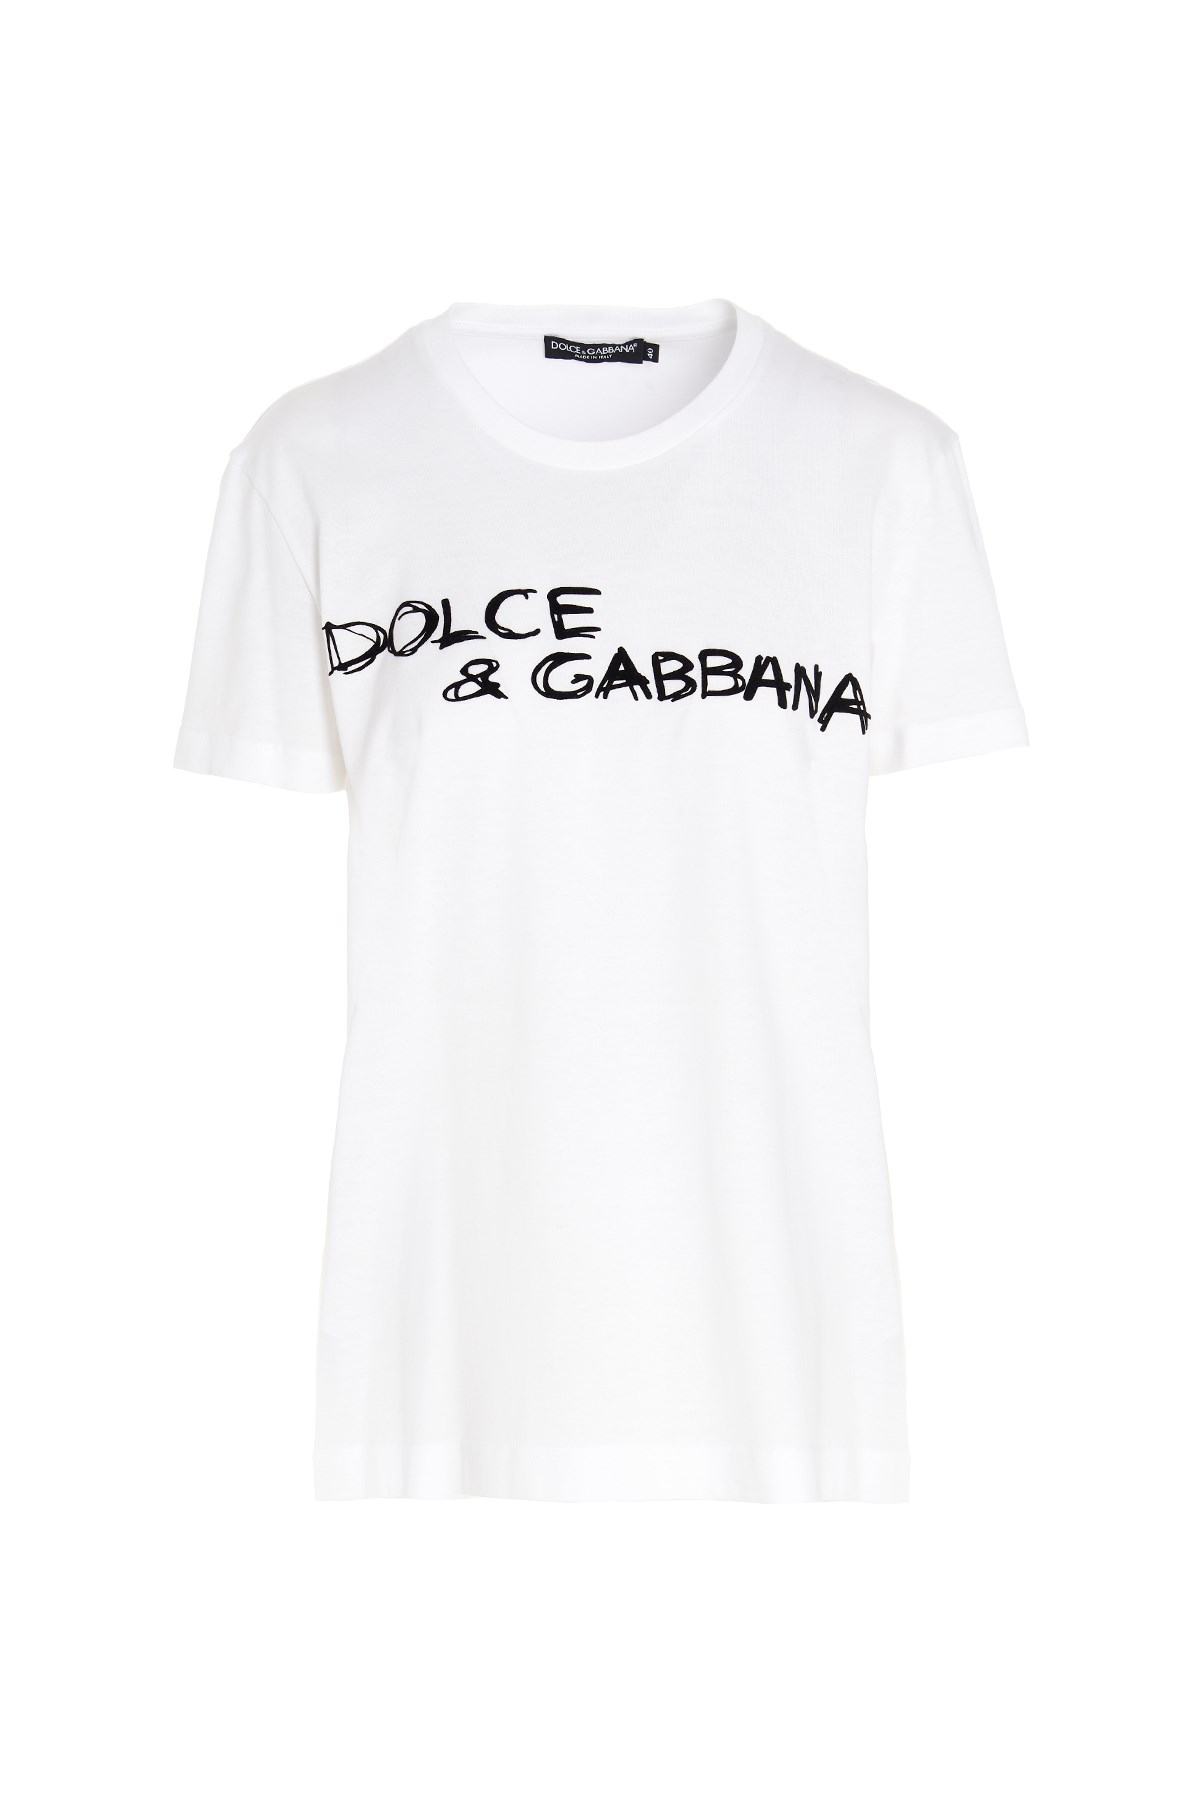 DOLCE & GABBANA T-Shirt Mit Logo-Druck